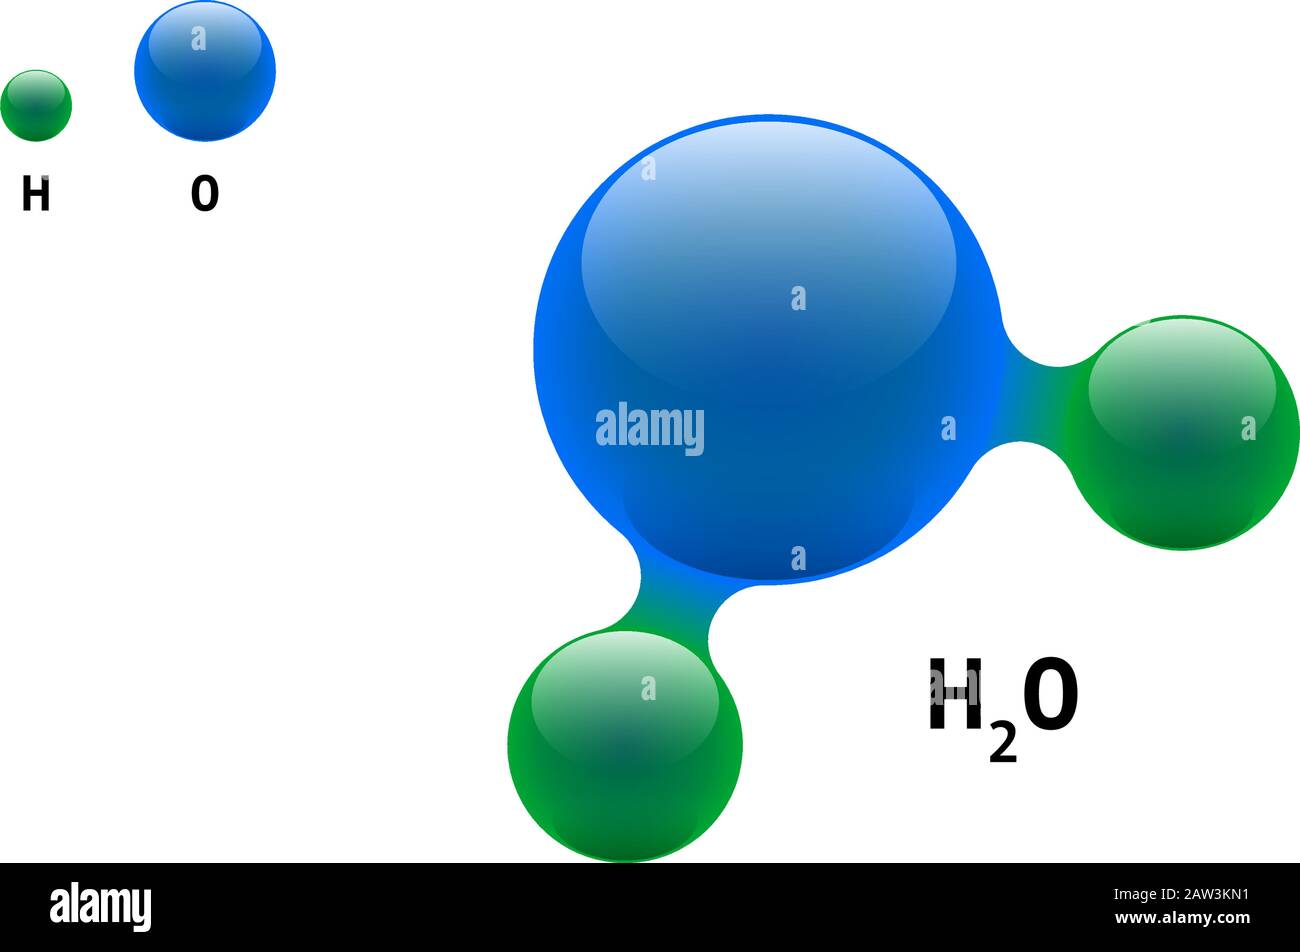 Chemie-Modell Molekül Wasser H2O wissenschaftlichen Element Formel. Integrierte Partikel natürliche anorganische 3d-Molekülstruktur bestehend. Zwei Wasserstoff und Sauerstoff Volumen Atom Vektor isolierte Kugeln Stock Vektor